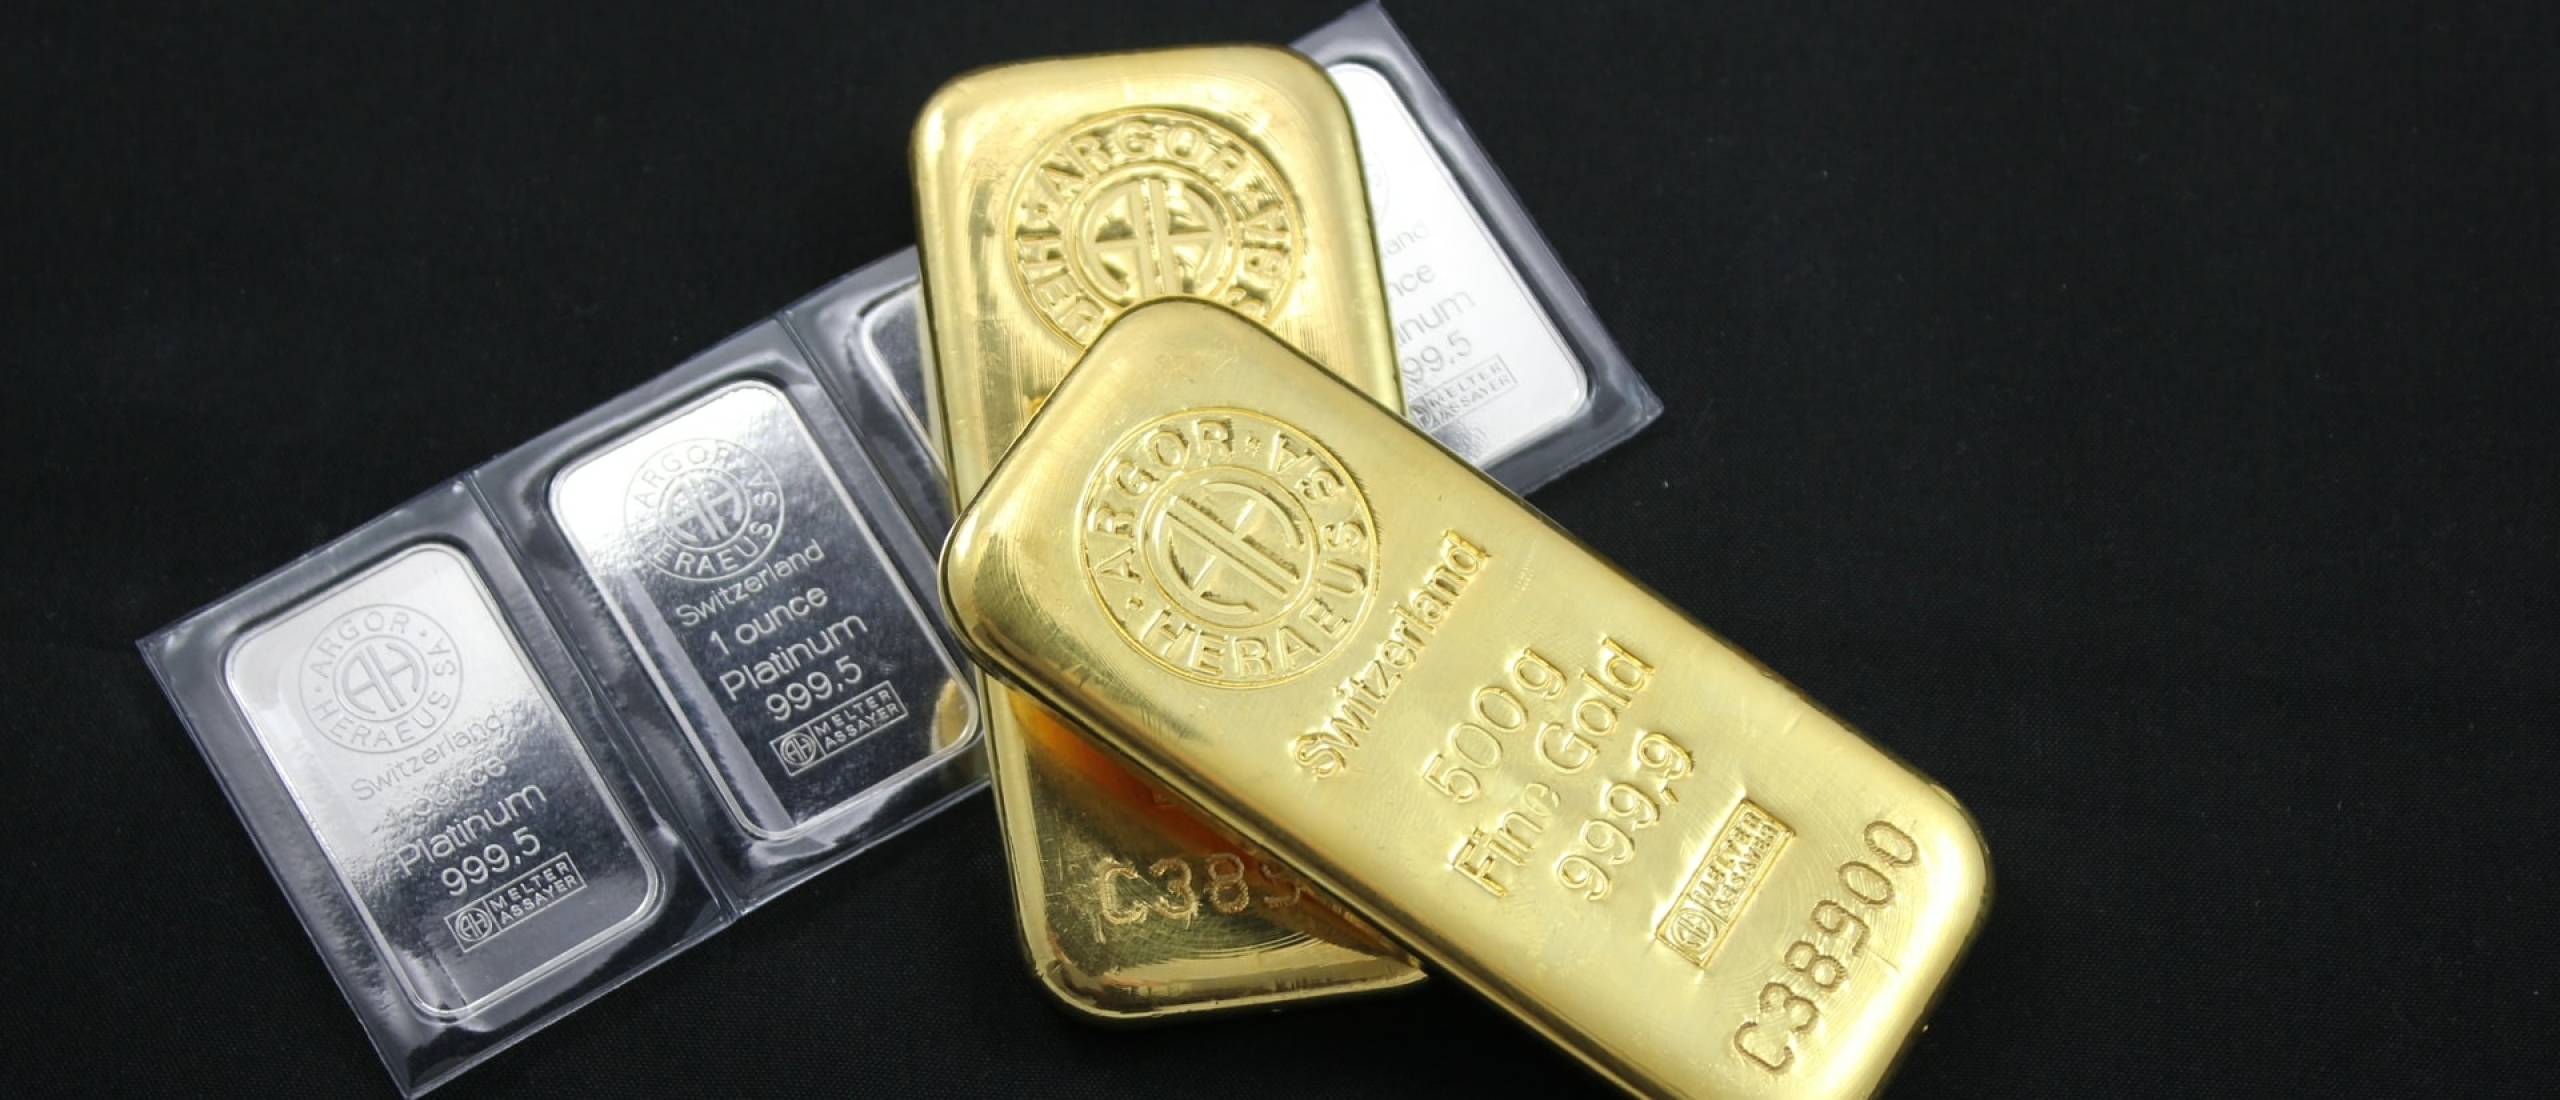 De verschillen tussen goud en zilver producten